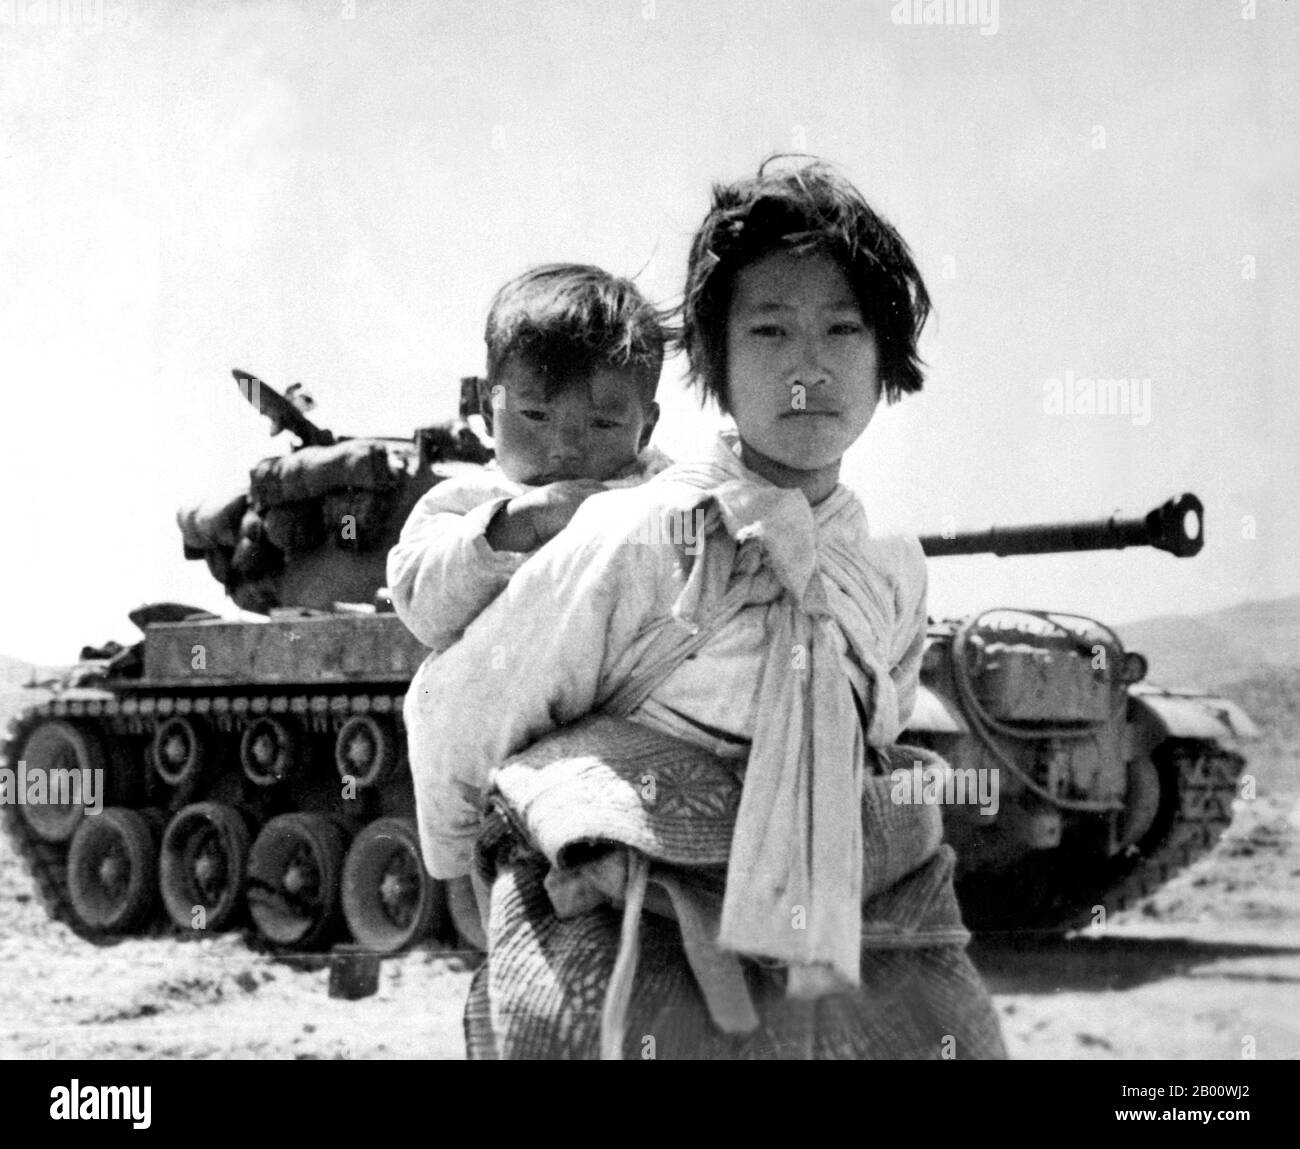 Korea: Mit ihrem Bruder auf dem Rücken stolzt ein kriegsmüdes koreanisches Mädchen am 9. Juni 1951 durch einen ins Stocken geratenen Panzer M-46 in Haengju, Koreakrieg (1950-1953). Der Koreakrieg (25. Juni 1950 - Waffenstillstand unterzeichnet 27. Juli 1953) war ein militärischer Konflikt zwischen der Republik Korea, unterstützt von den Vereinten Nationen, und Nordkorea, unterstützt von der Volksrepublik China (VRC), mit militärischer materieller Hilfe aus der Sowjetunion. Der Krieg war ein Ergebnis der physischen Teilung Koreas durch eine Vereinbarung der siegreichen Alliierten am Ende des Pazifikkrieges am Ende des Zweiten Weltkriegs Stockfoto